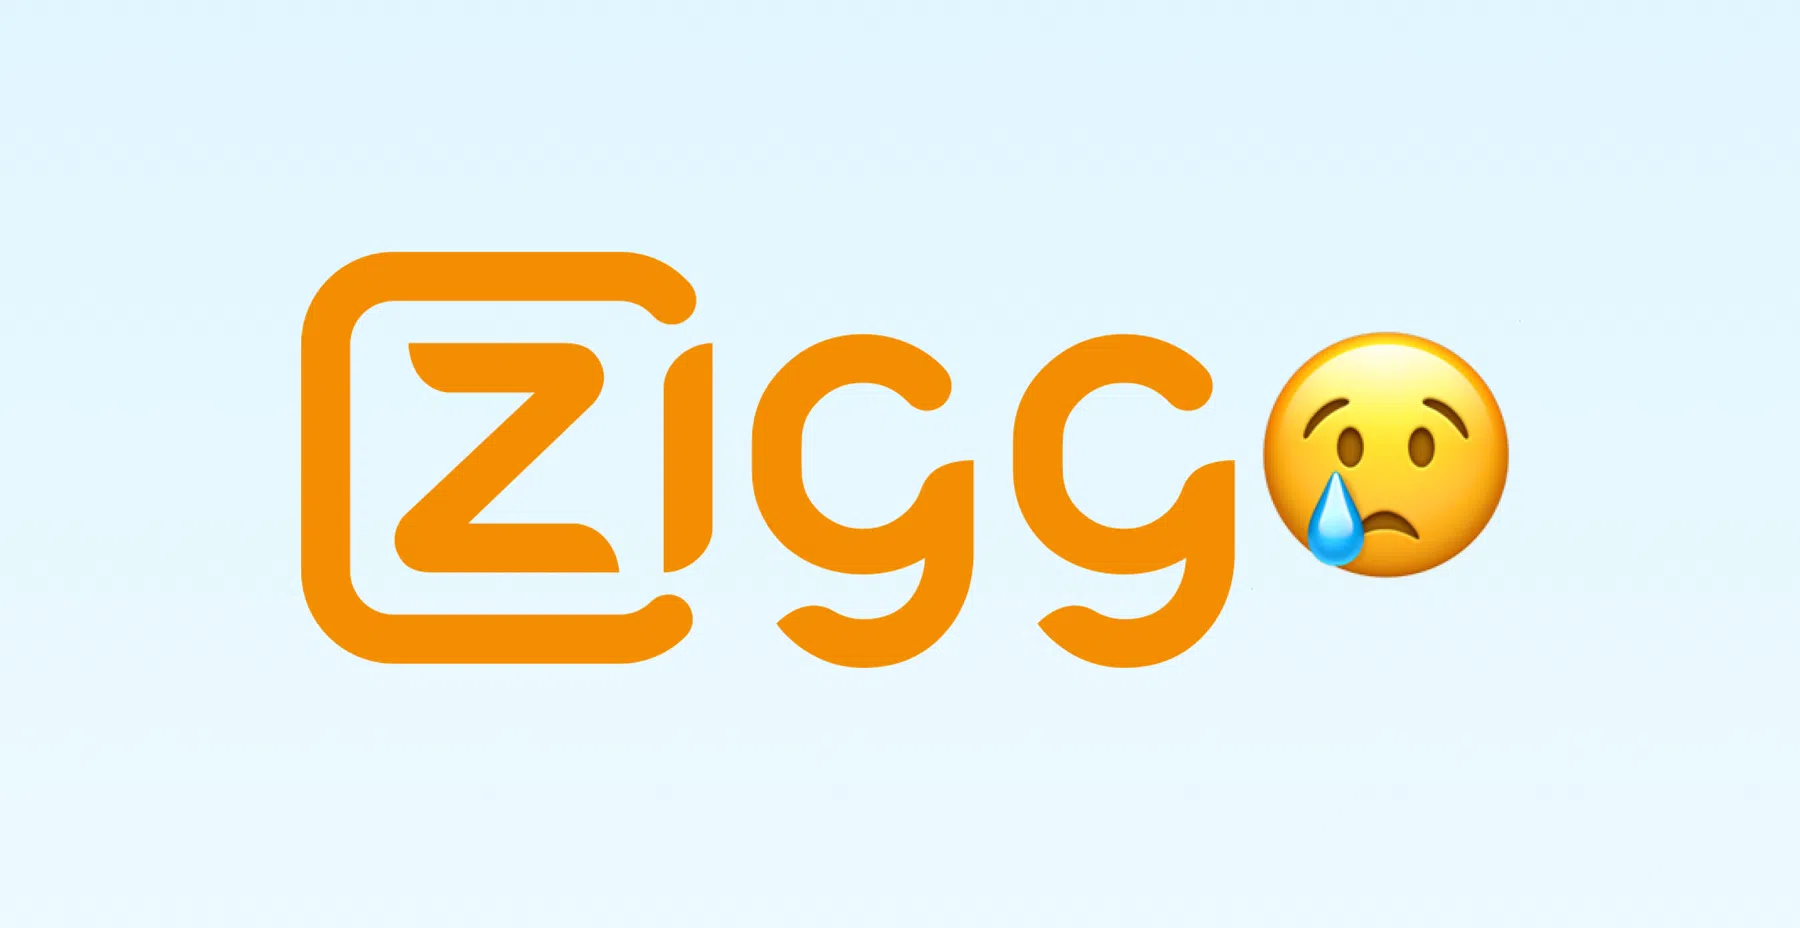 Ziggo probeert ex-klanten terug te winnen met deze opvallende aanbieding